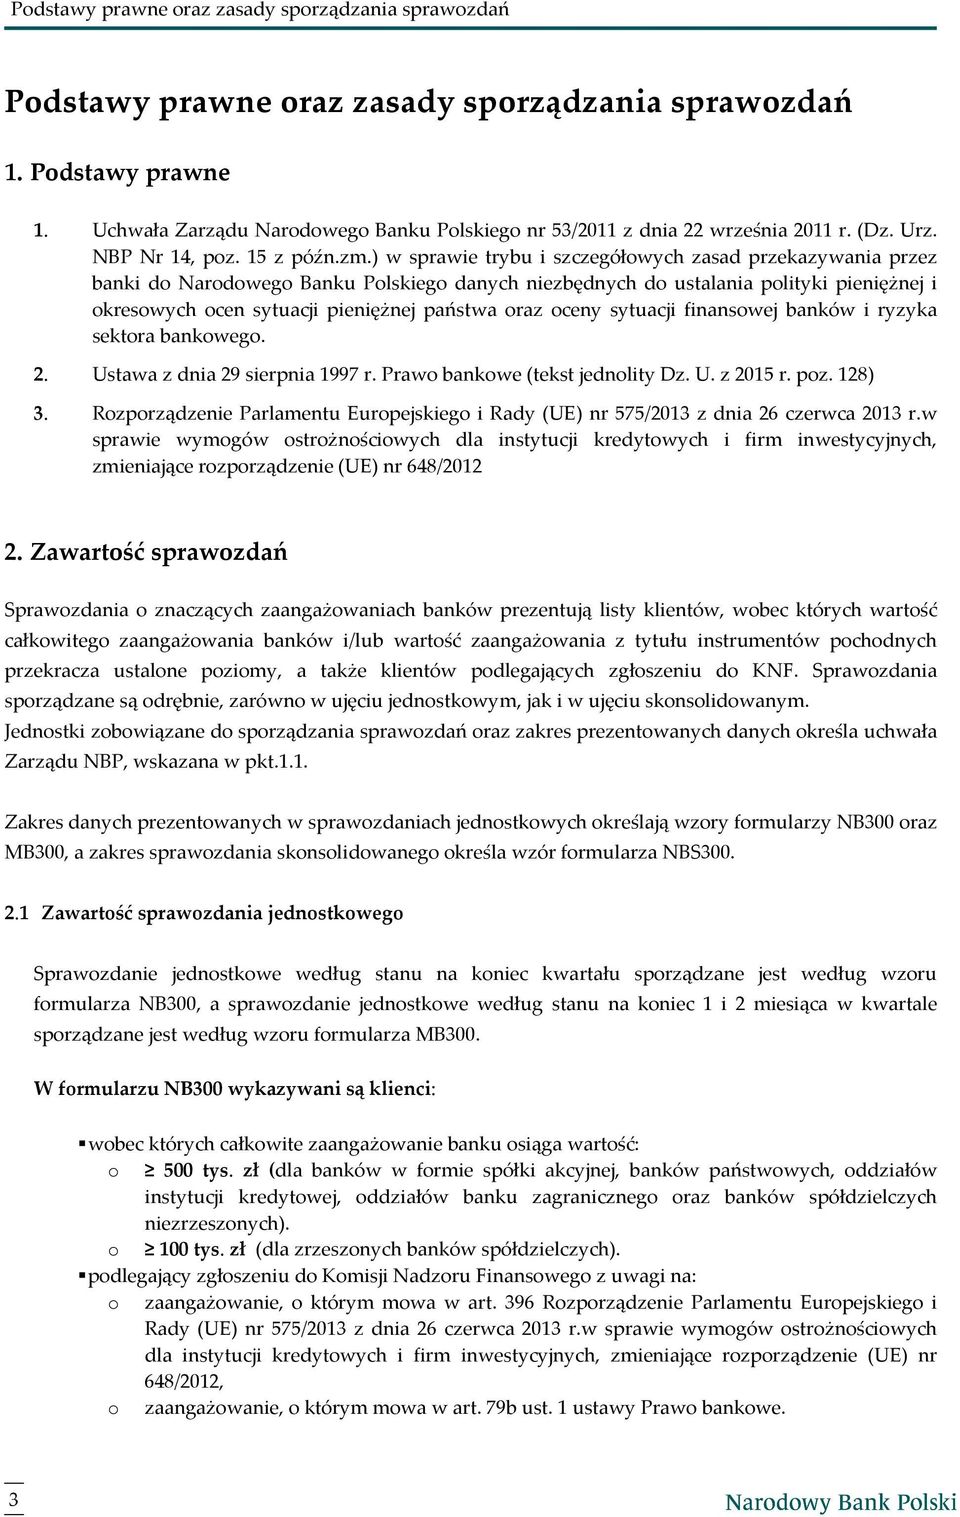 ) w sprawie trybu i szczegółowych zasad przekazywania przez banki do Narodowego Banku Polskiego danych niezbędnych do ustalania polityki pieniężnej i okresowych ocen sytuacji pieniężnej państwa oraz